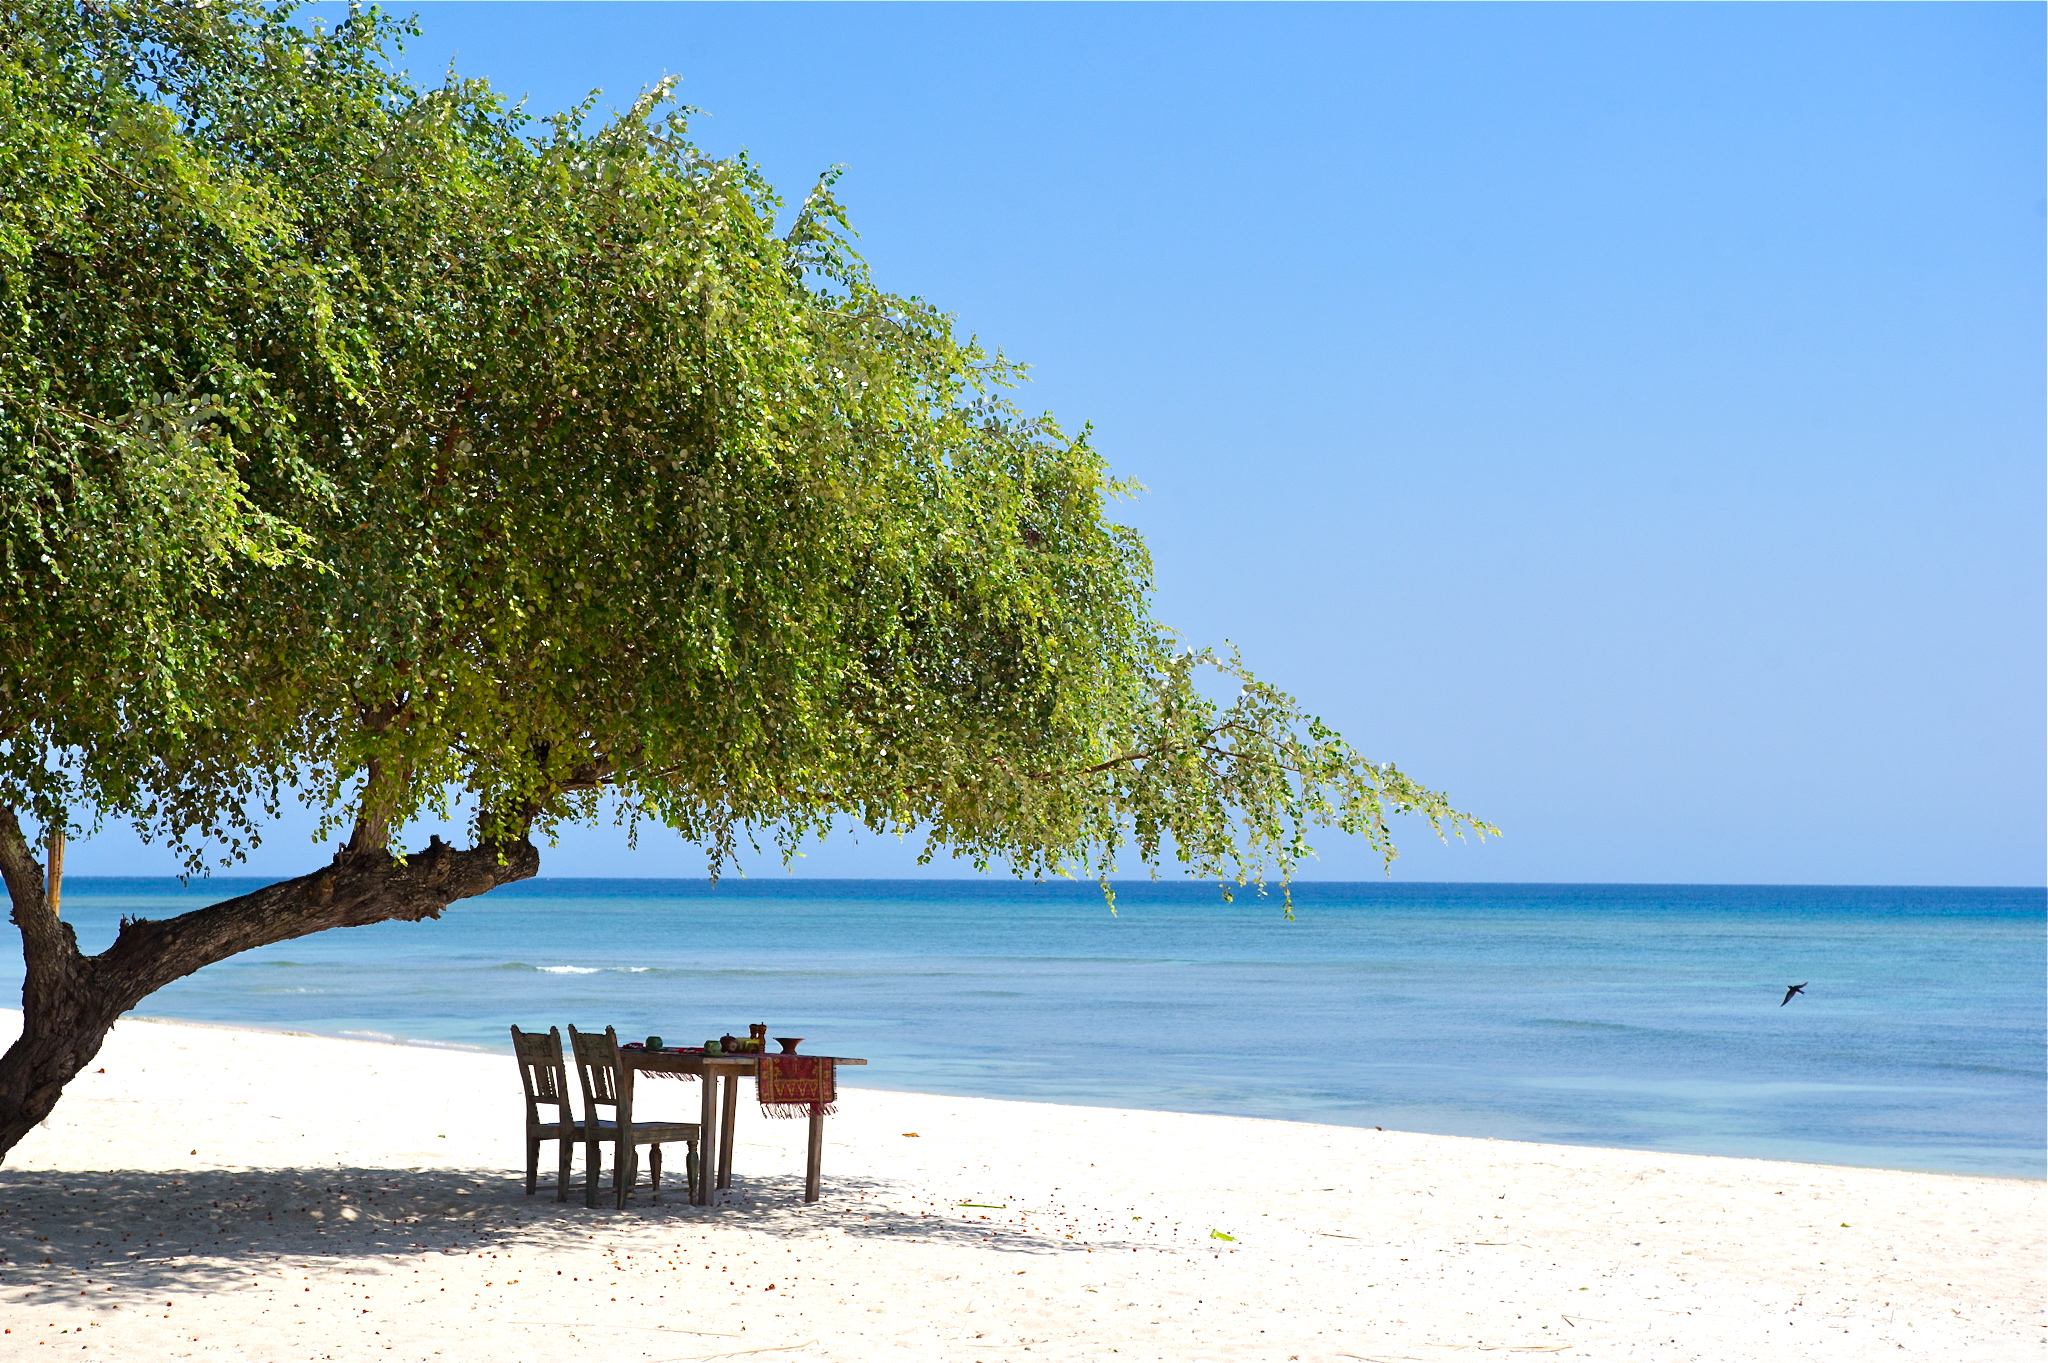 Zdjęcie Pantai Sire - popularne miejsce wśród znawców relaksu